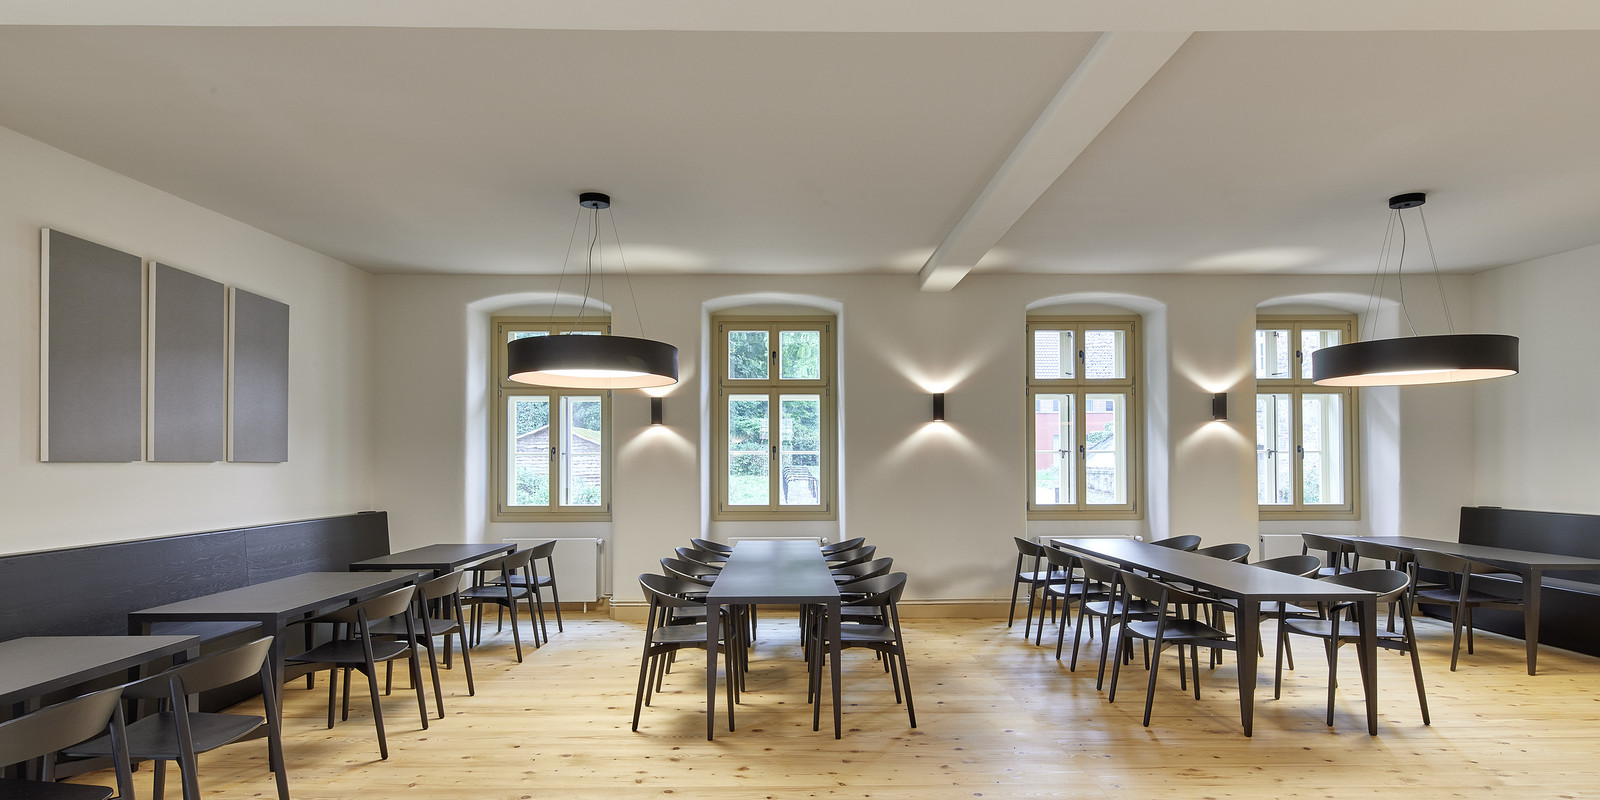 Zwischen Tradition und Moderne - pro office Hannover richtet Räumlichkeiten im Kloster Loccum ein Bild 2